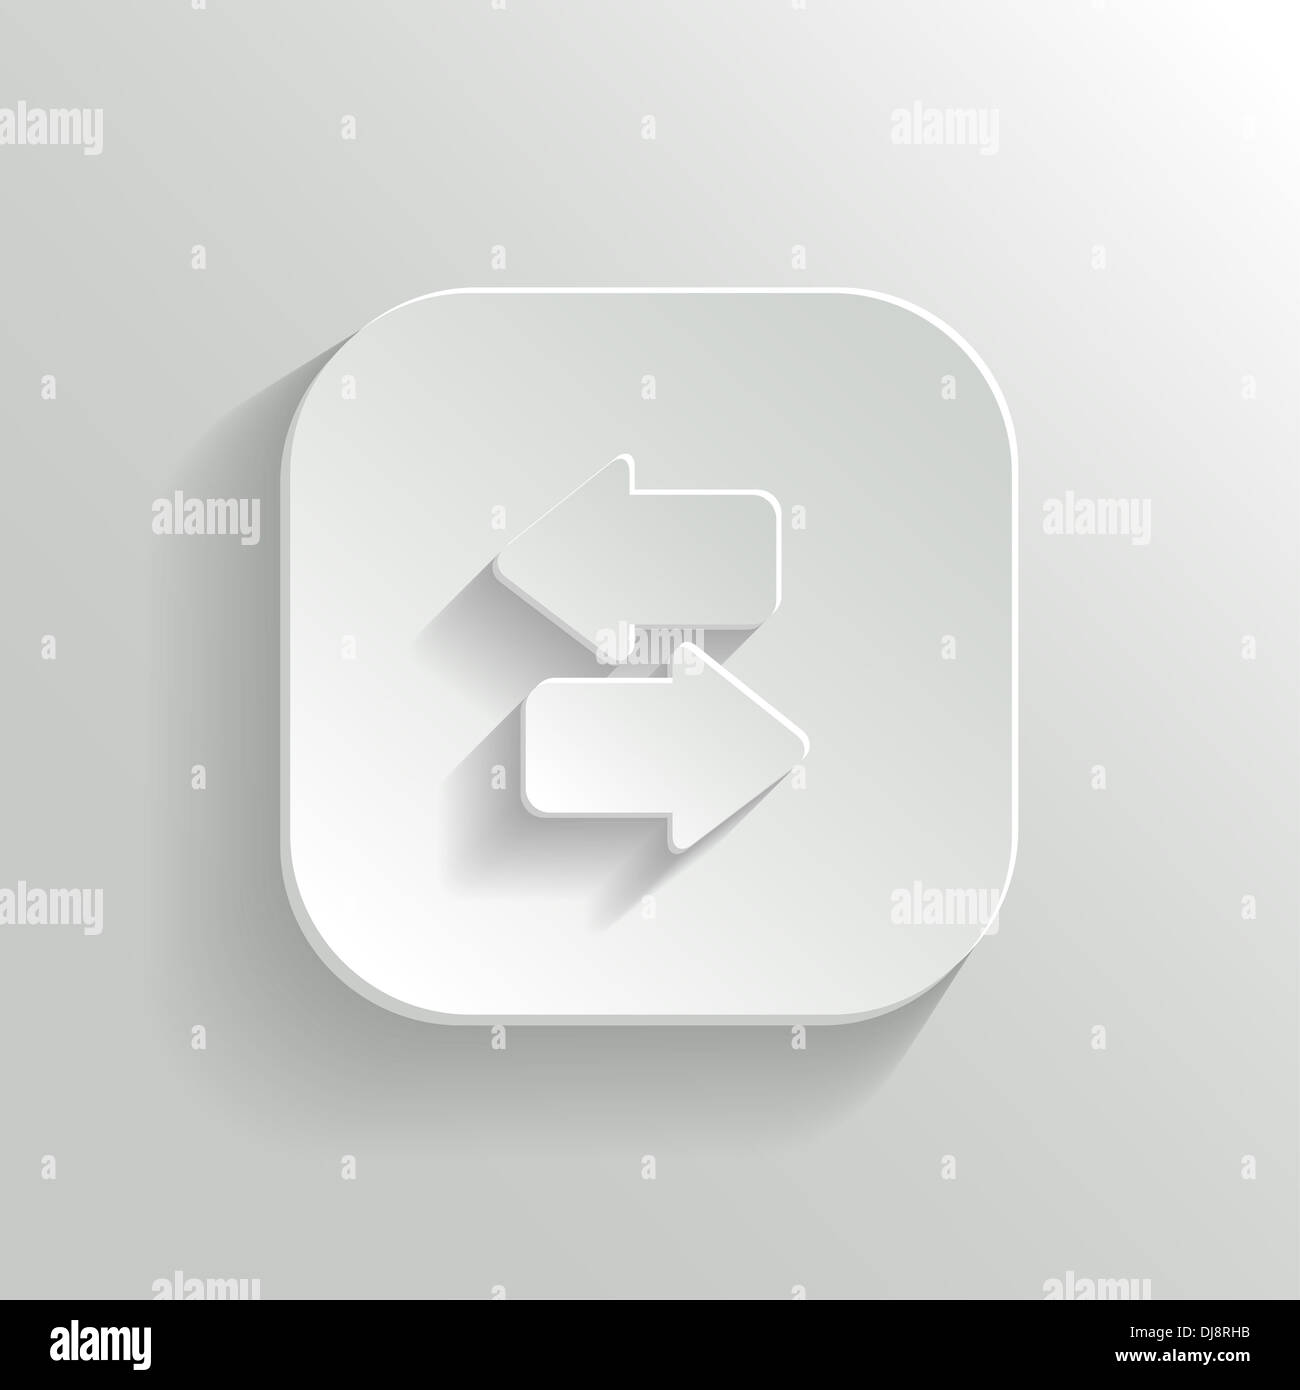 Synchronization icon with arrows - white app button Stock Photo